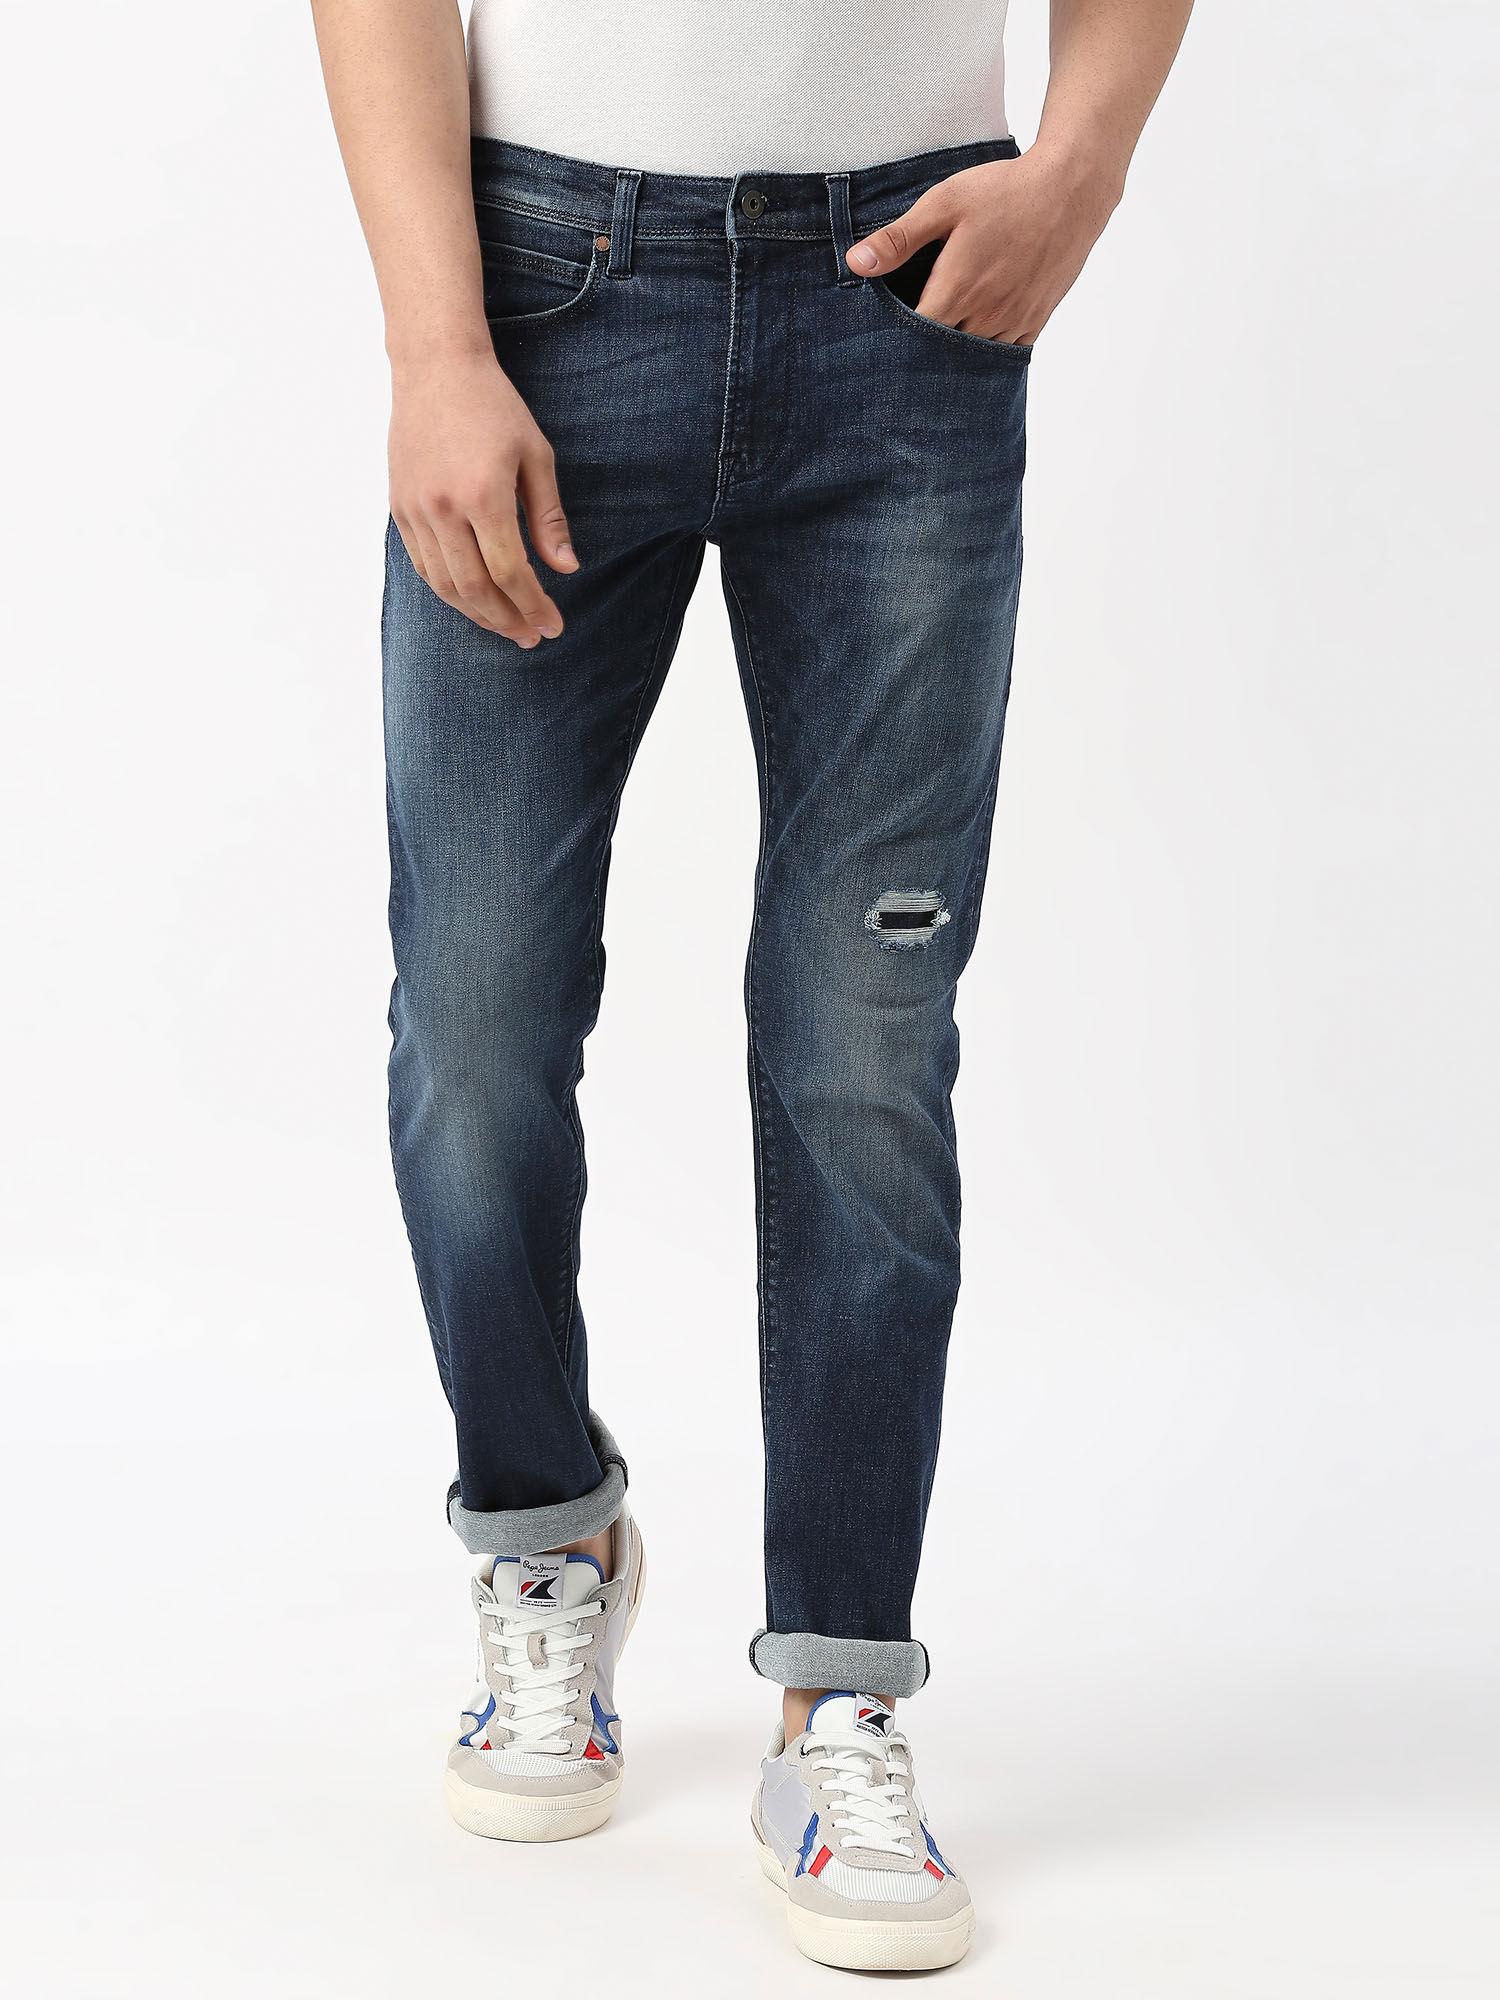 navy-blue-vapour-slim-fit-mid-waist-jeans